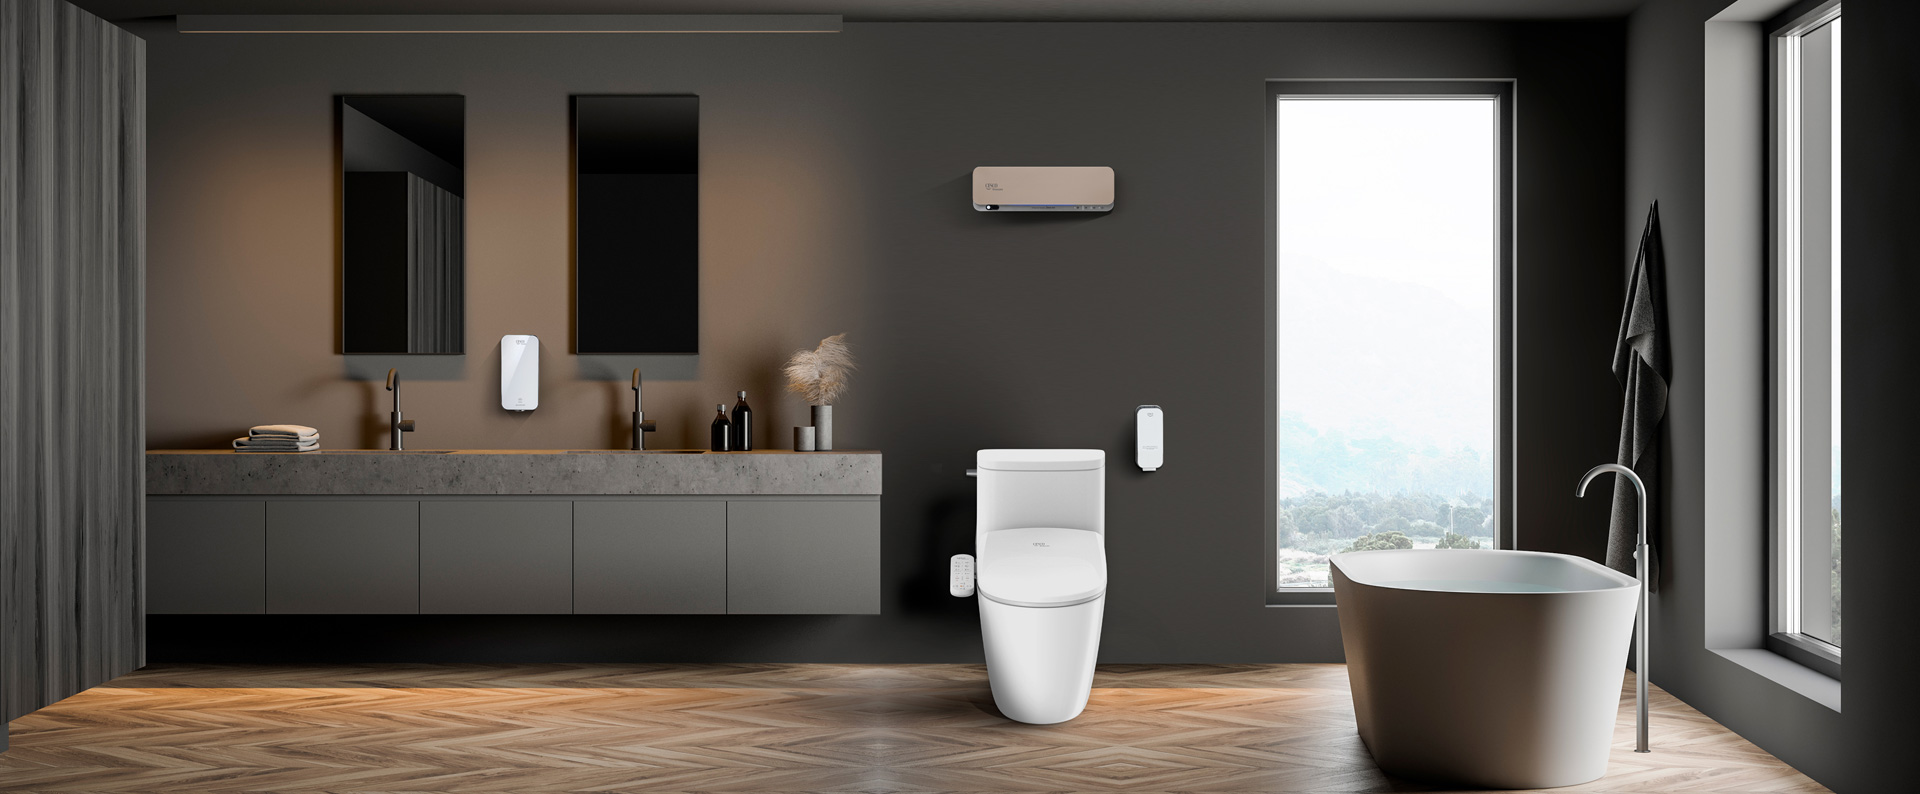 세스코(CESCO)의 바디케어 관련 제품(핸드제닉, 공기살균기, 유어핏 비데, 프레쉬제닉)이 설치된 화장실 내부입니다.